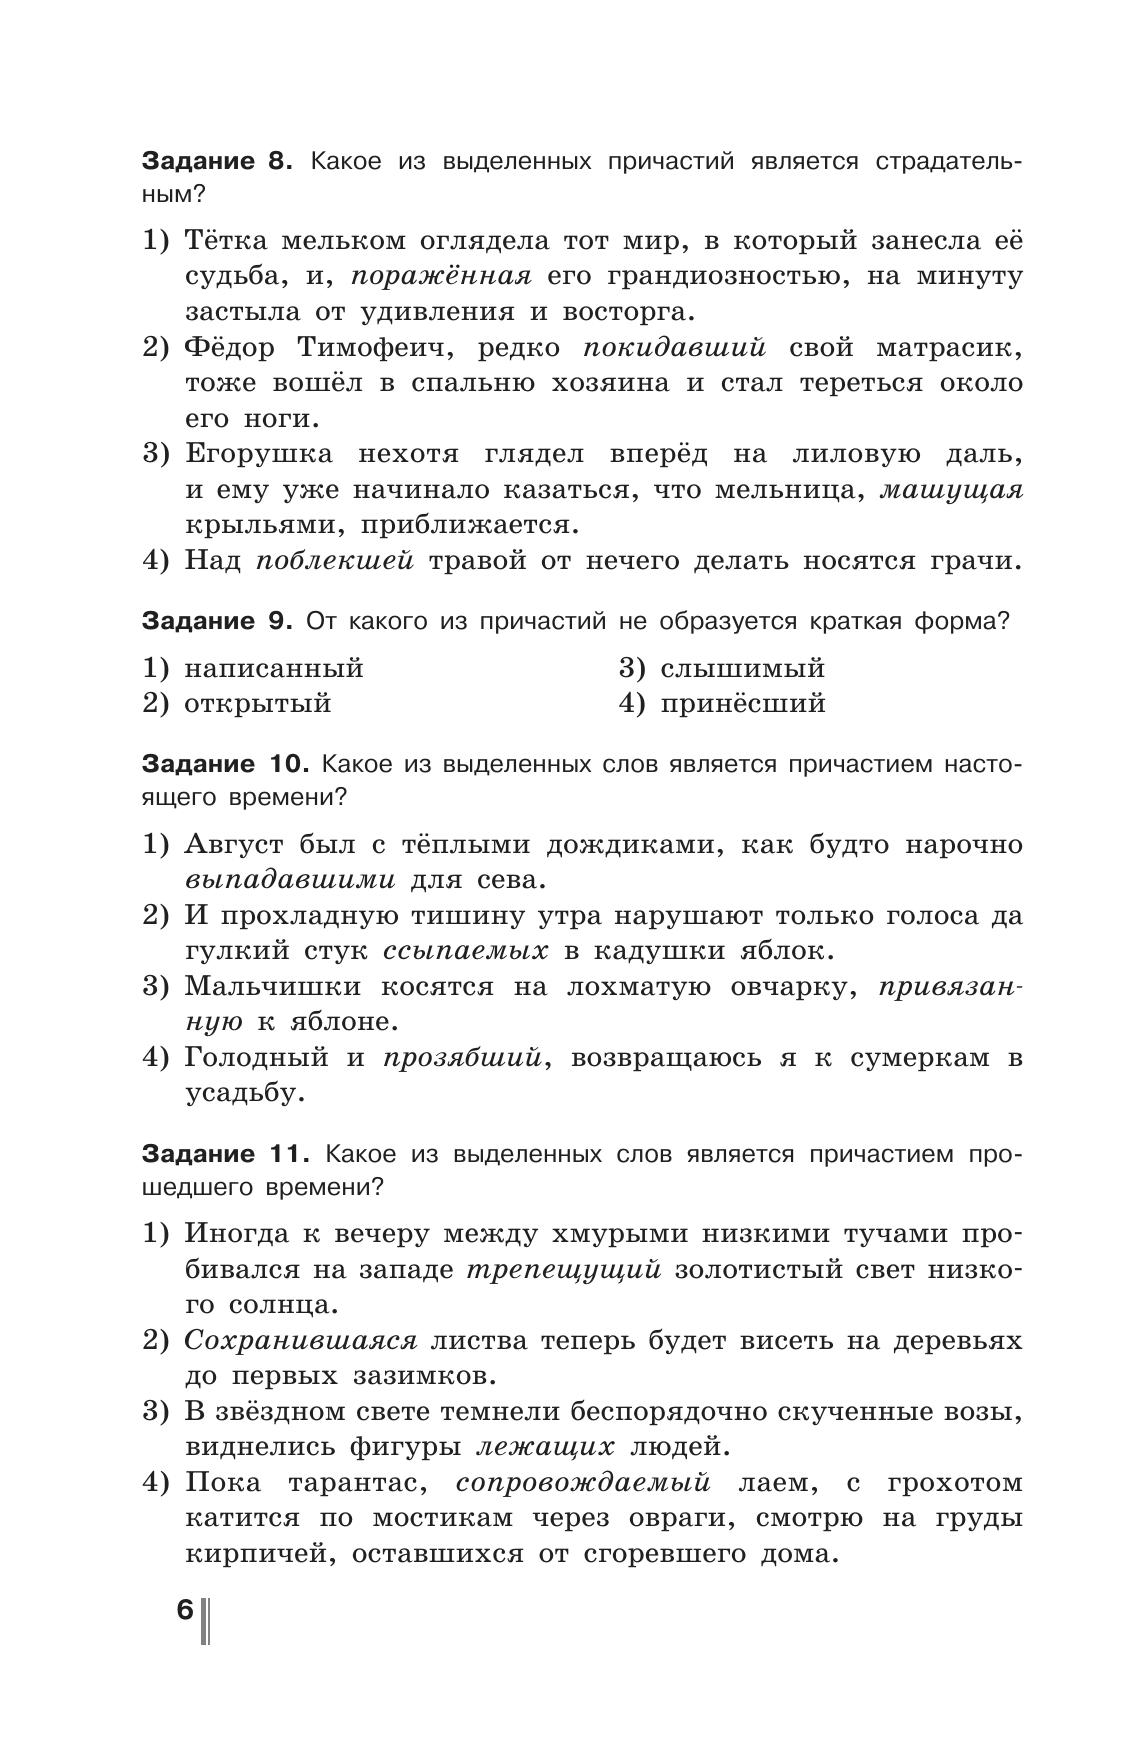 Русский язык. Готовимся к ГИА. Тесты, творческие работы, проекты. 7 класс 10